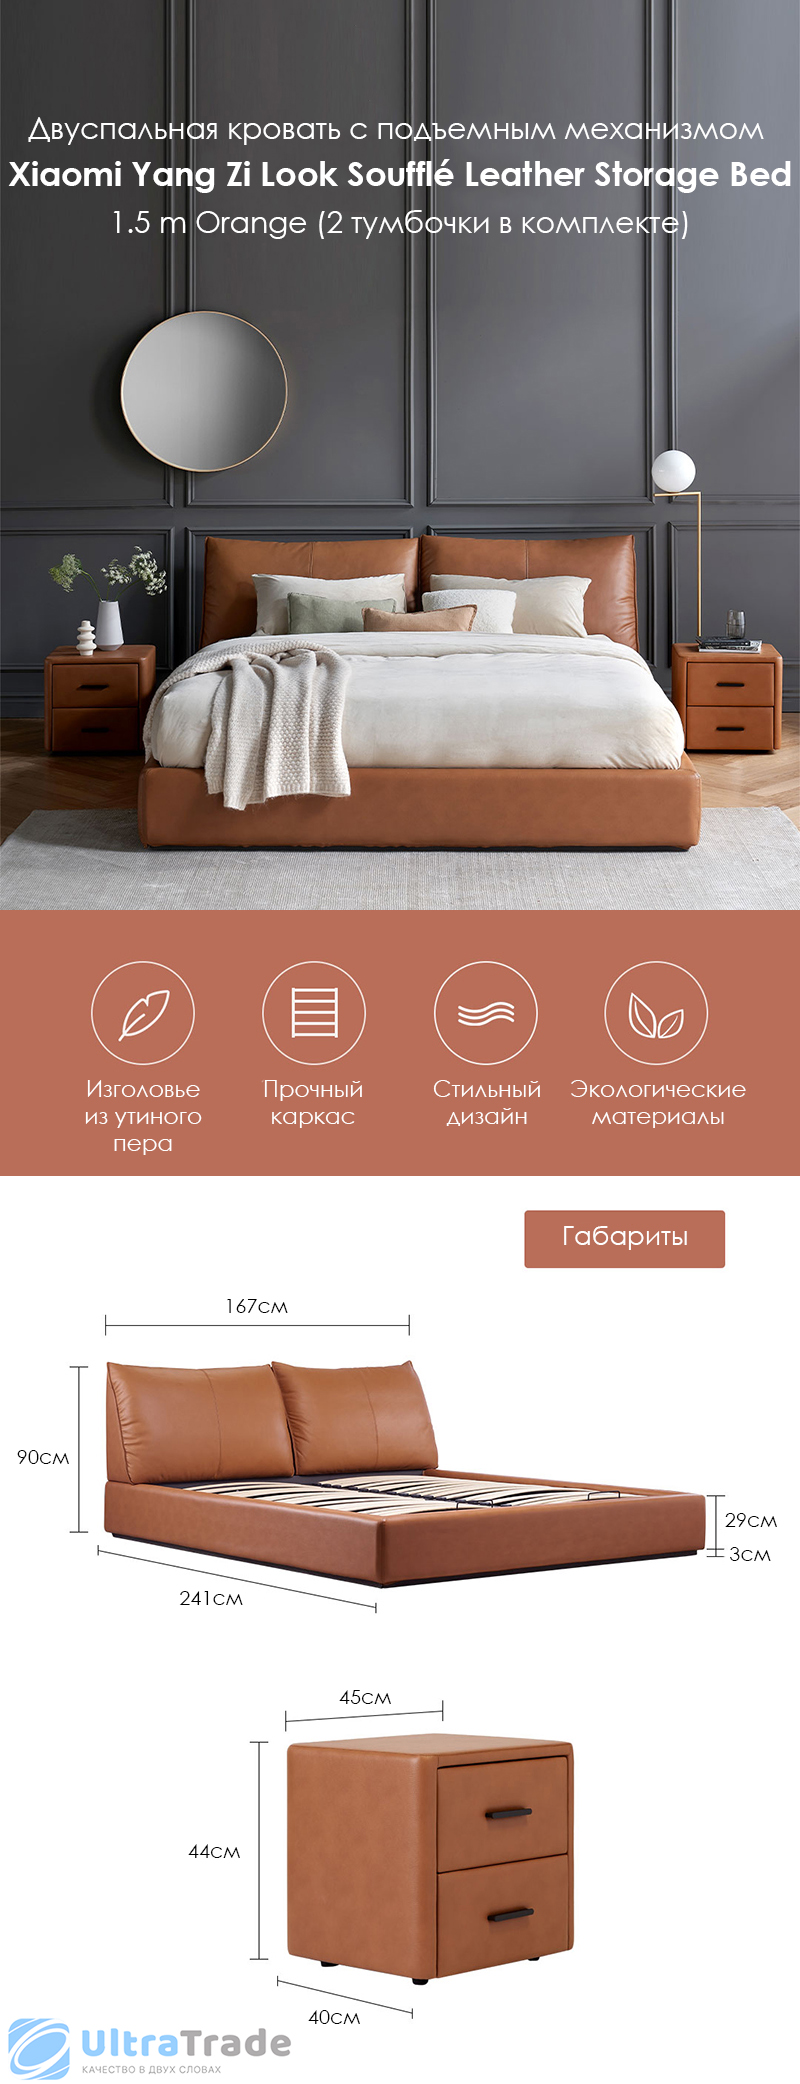 Двуспальная кровать с подъемным механизмом Xiaomi Yang Zi Look Soufflé Leather Storage Bed Set 1.5 m Orange (2 тумбочки в комплекте)